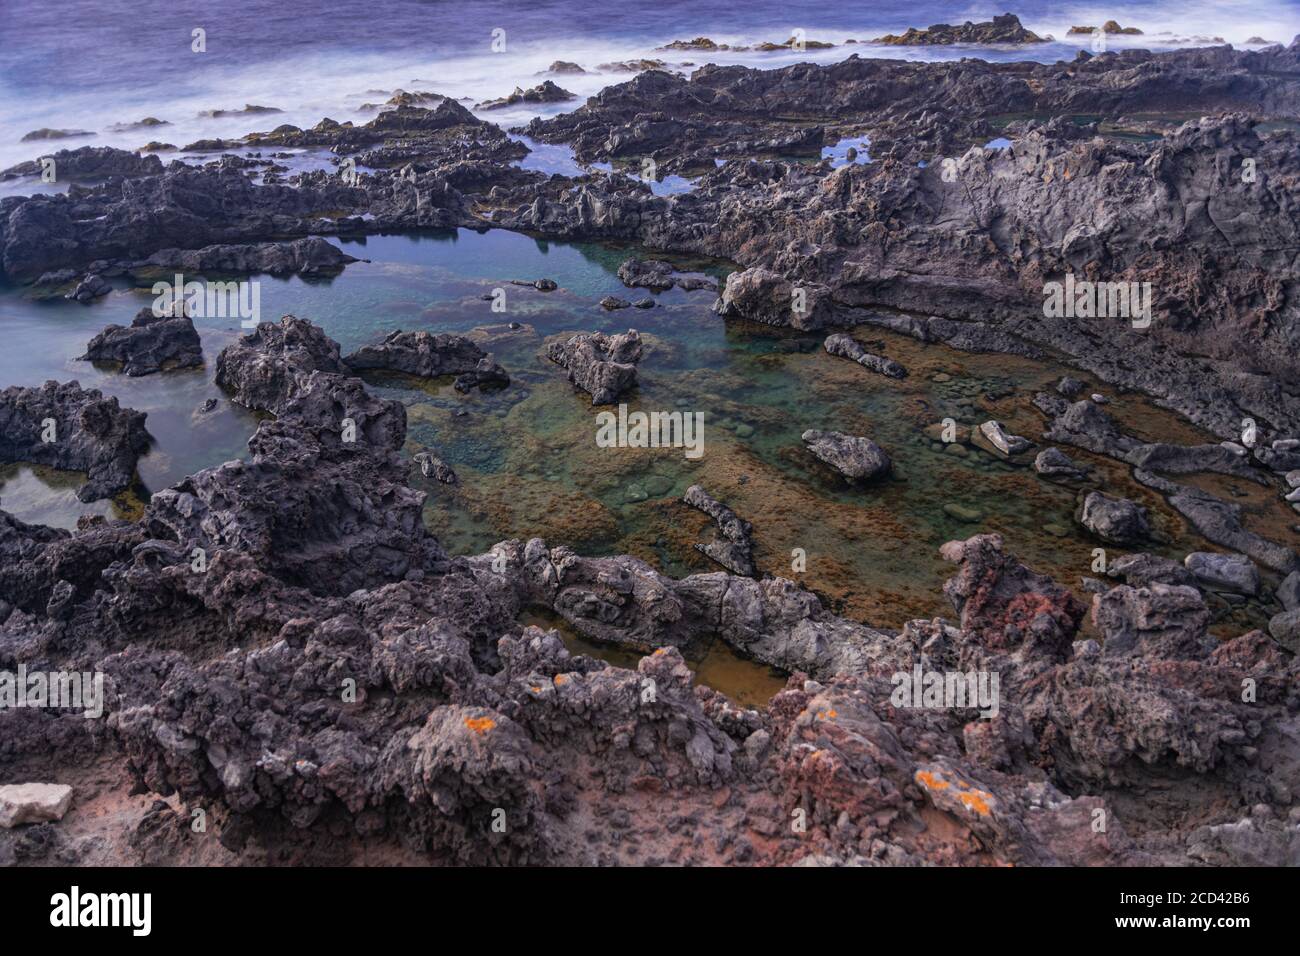 Los Silos volcanique naturel eau salée flaques, longue exposition, Tenerife, îles Canaries, Espagne Banque D'Images